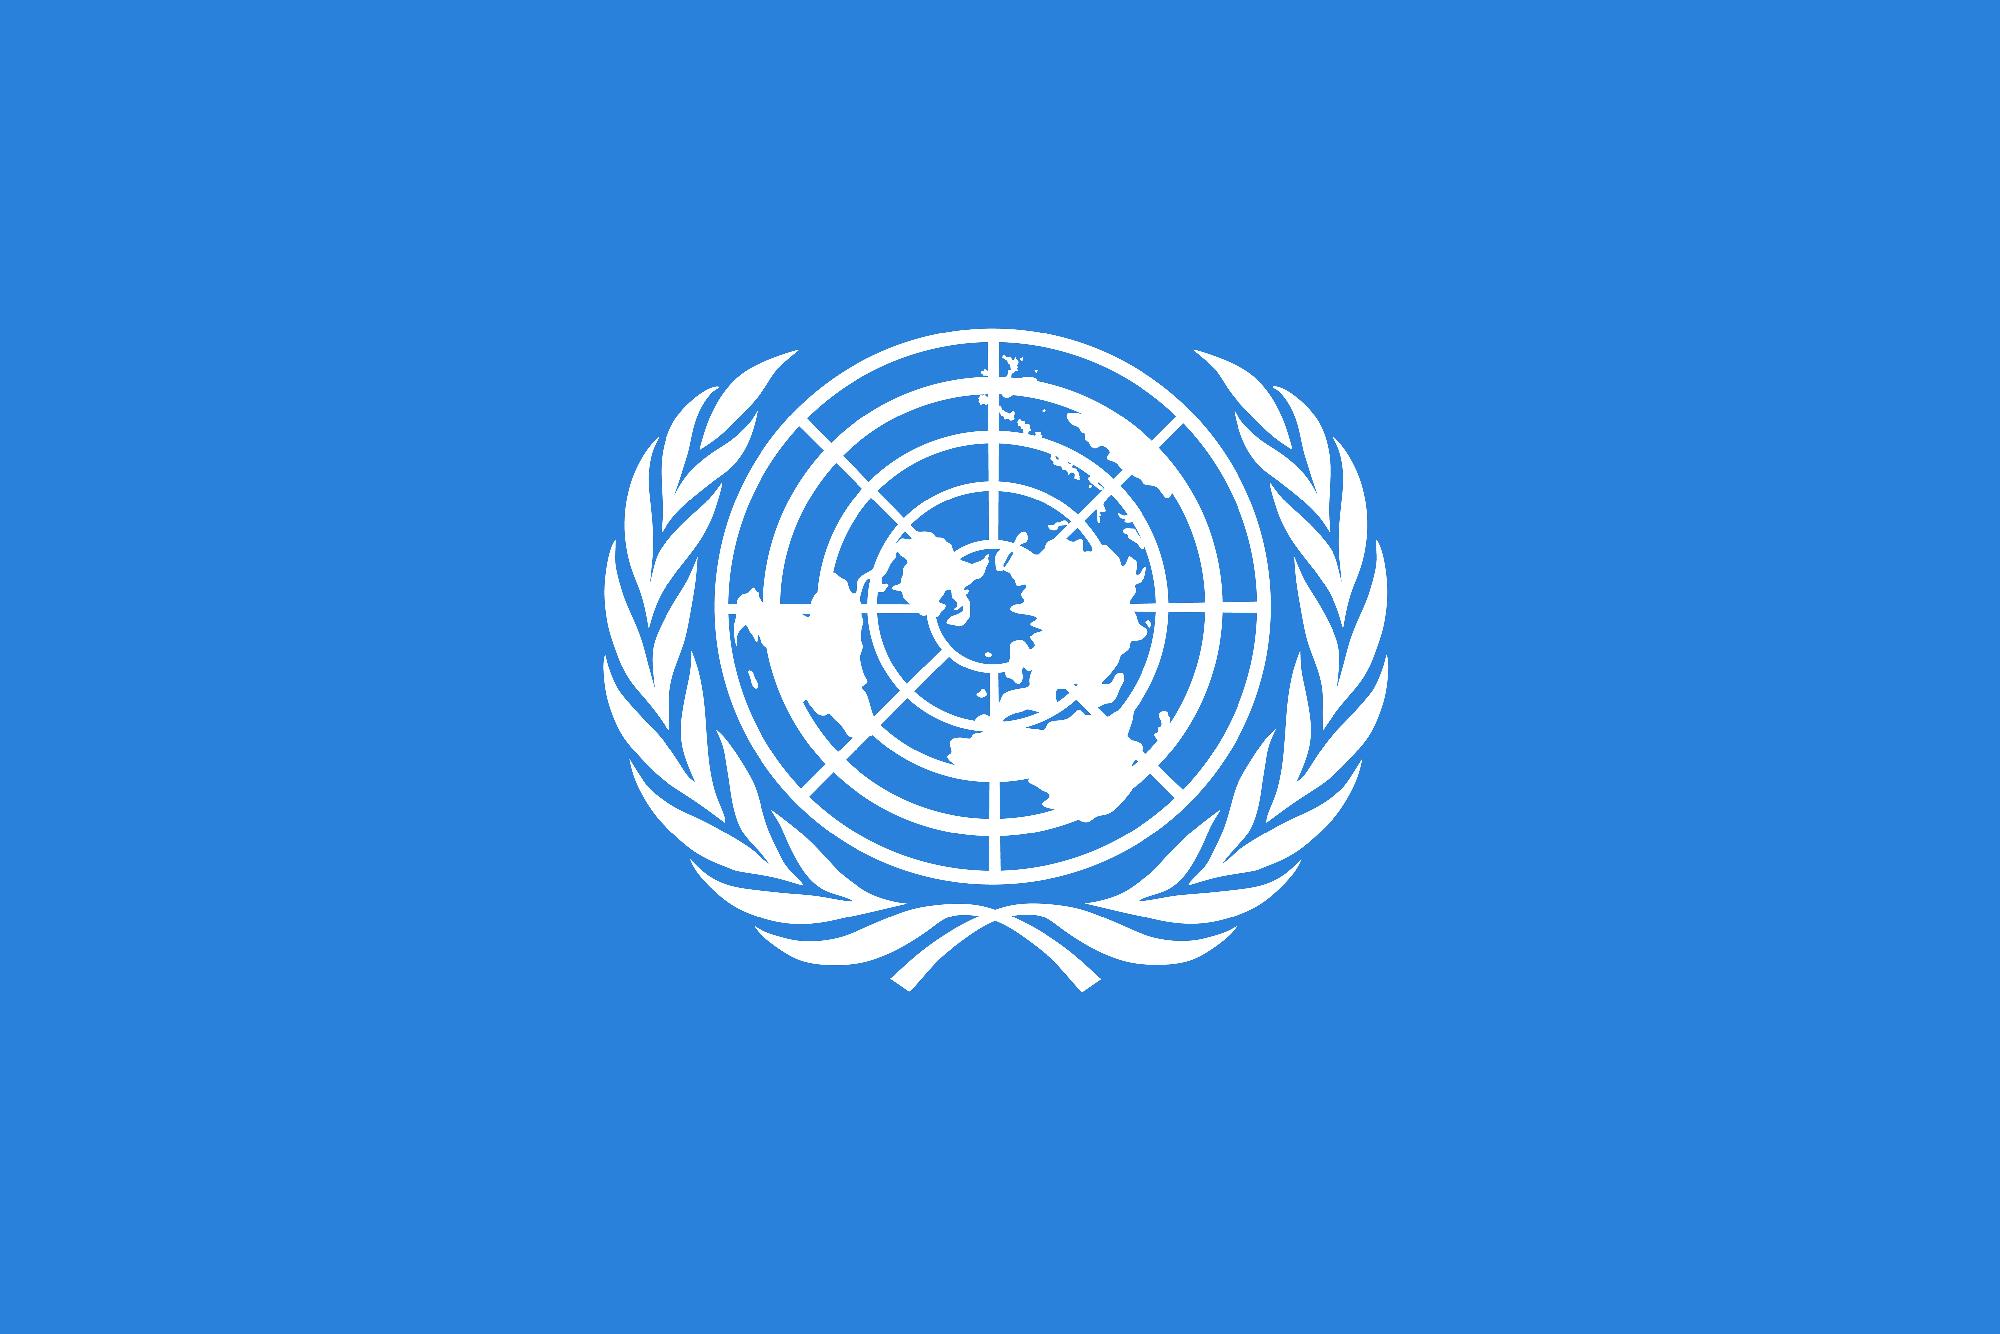 Guterres az ENSZ-tisztségviselők kiutasítása miatt bírálta Etiópiát